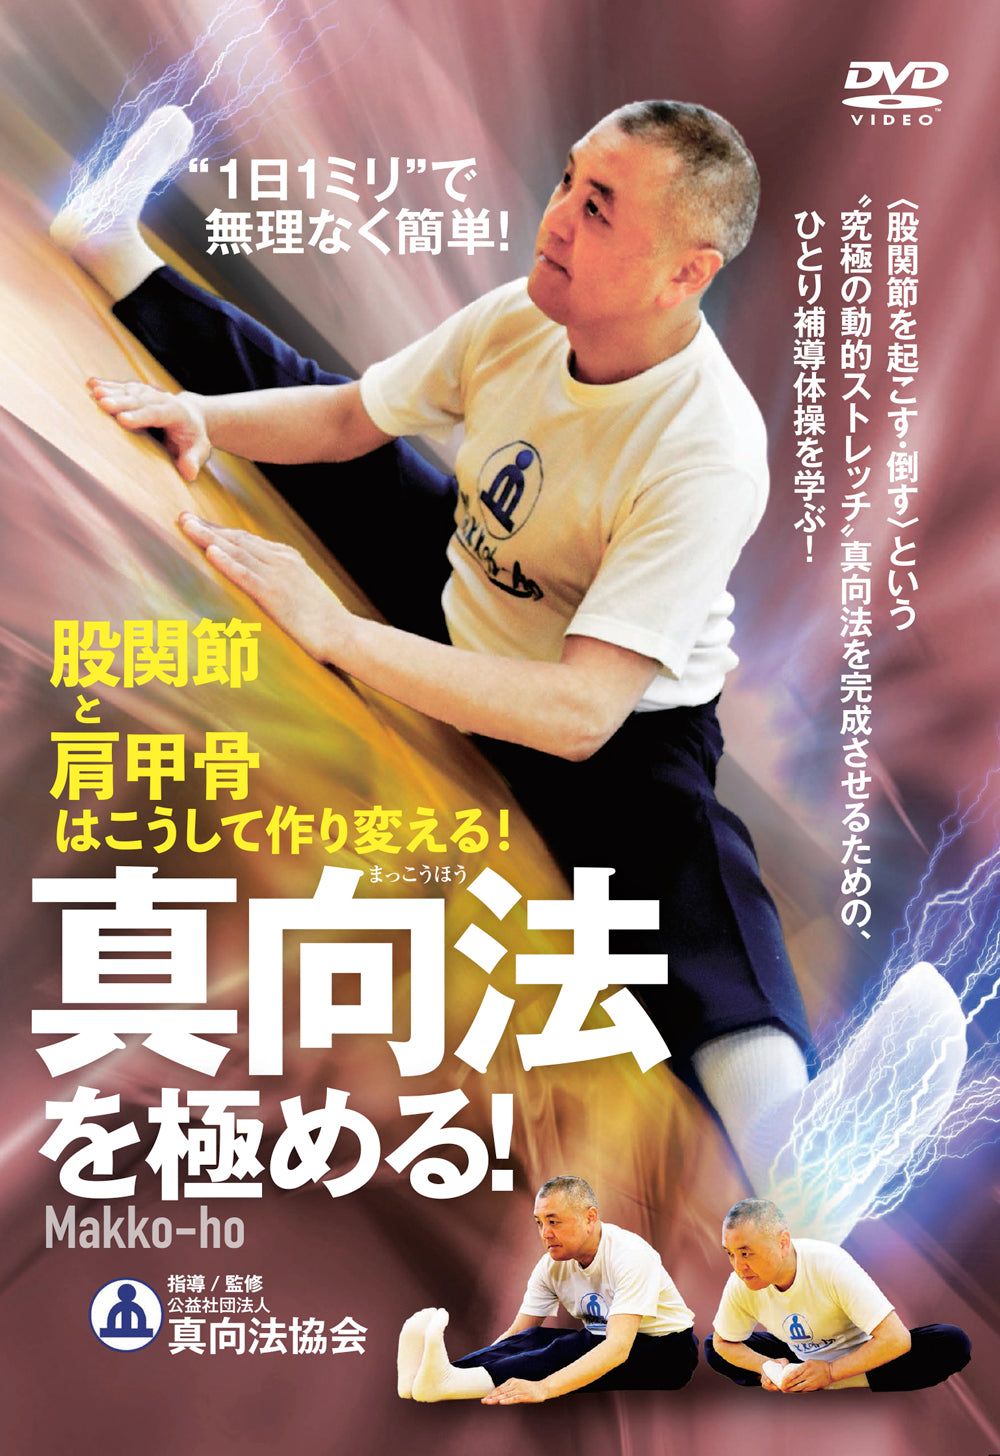 Mastering Makko Ho DVD by Masahiro Ono - Budovideos Inc